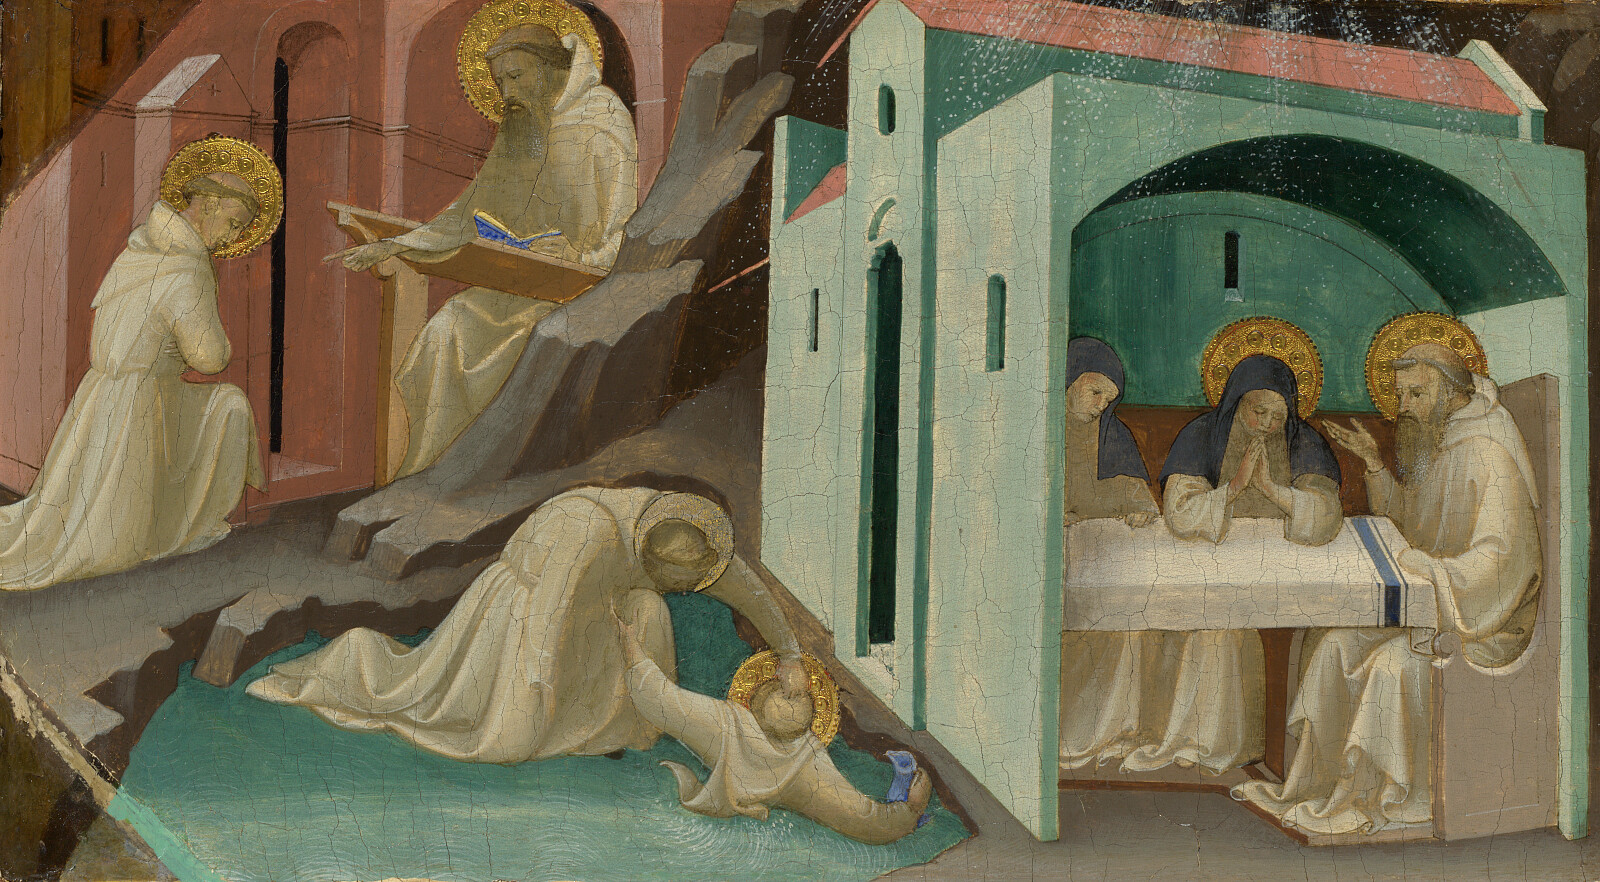 Wydarzenia z życia św. Benedykta - Lorenzo Monaco, Public domain, via Wikimedia Commons